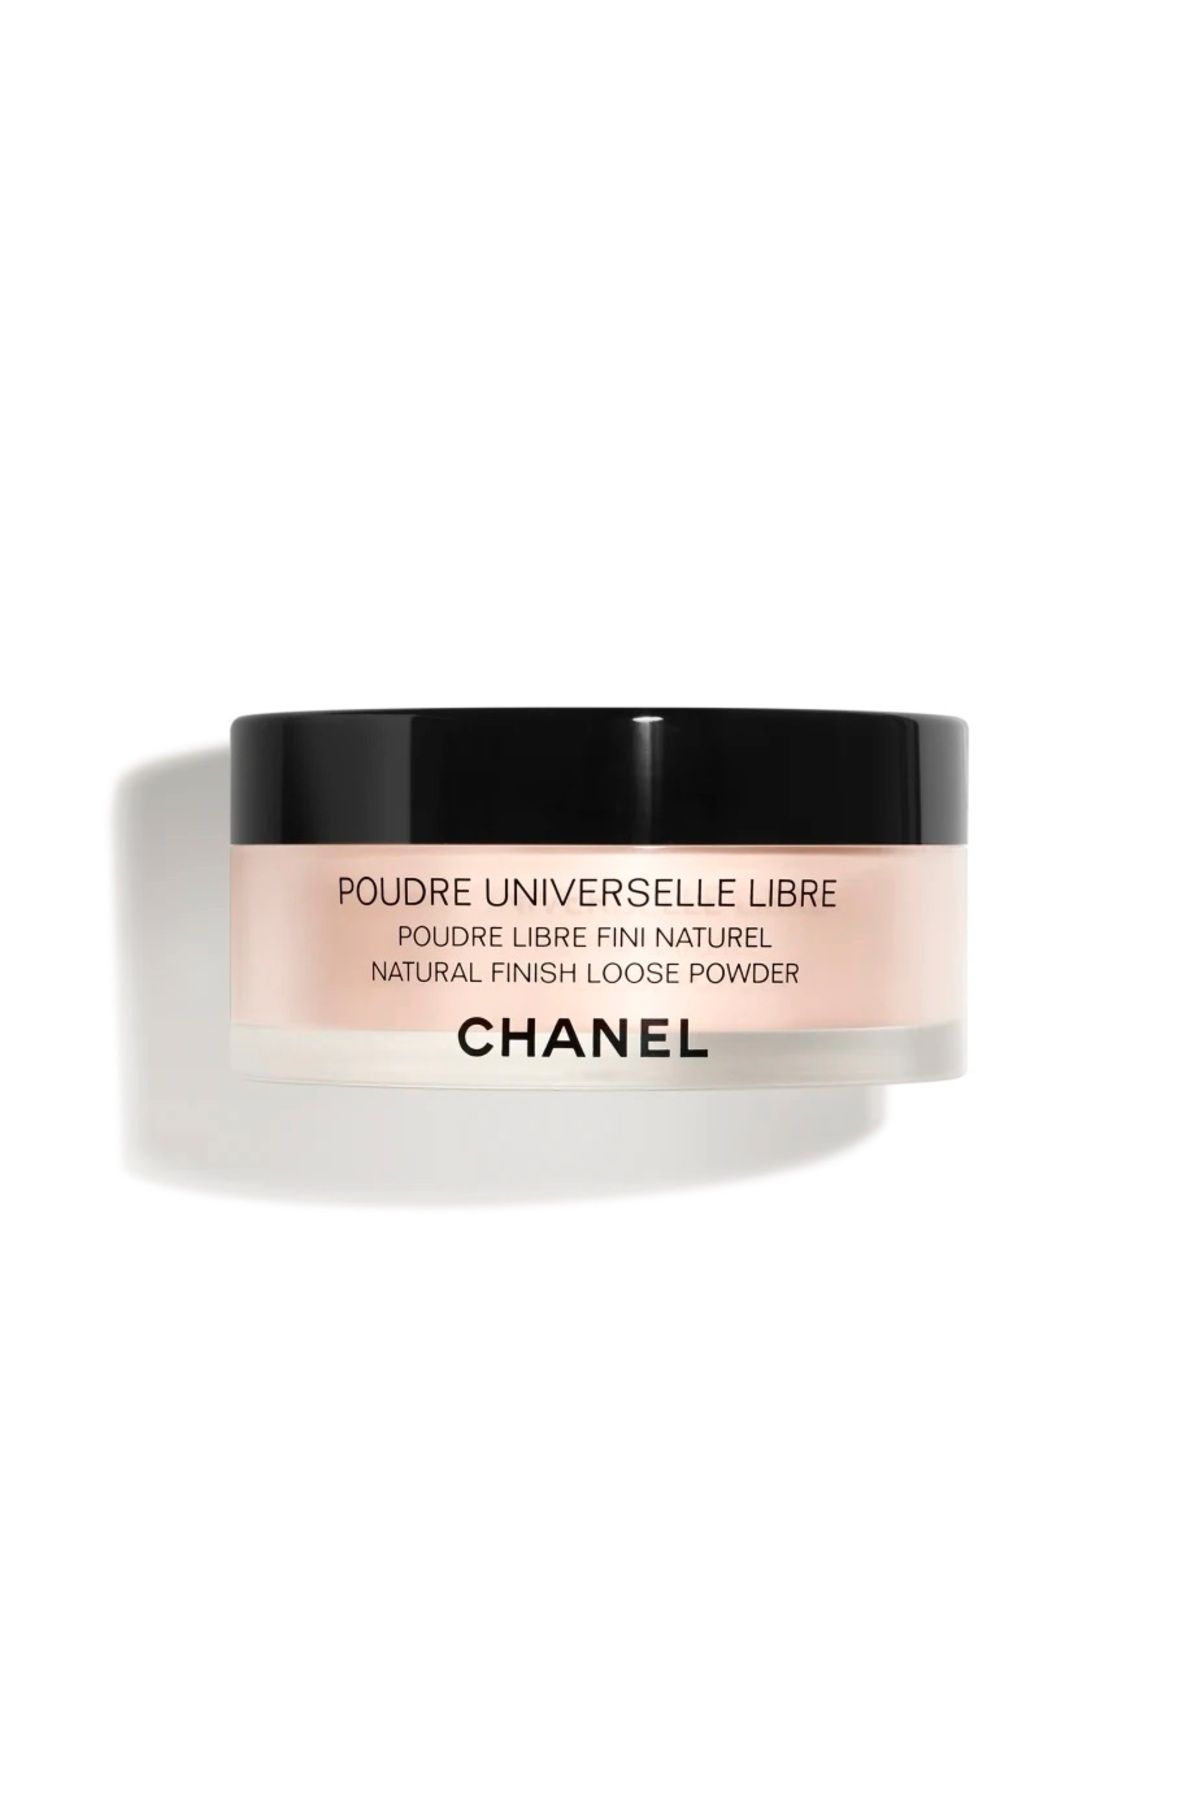 Chanel POUDRE UNIVERSELLE LIBRE - İnce Yapılı Hafif Dokulu Ton Eşitleyici Mat Bitişli Aydınlatıcı Pudra